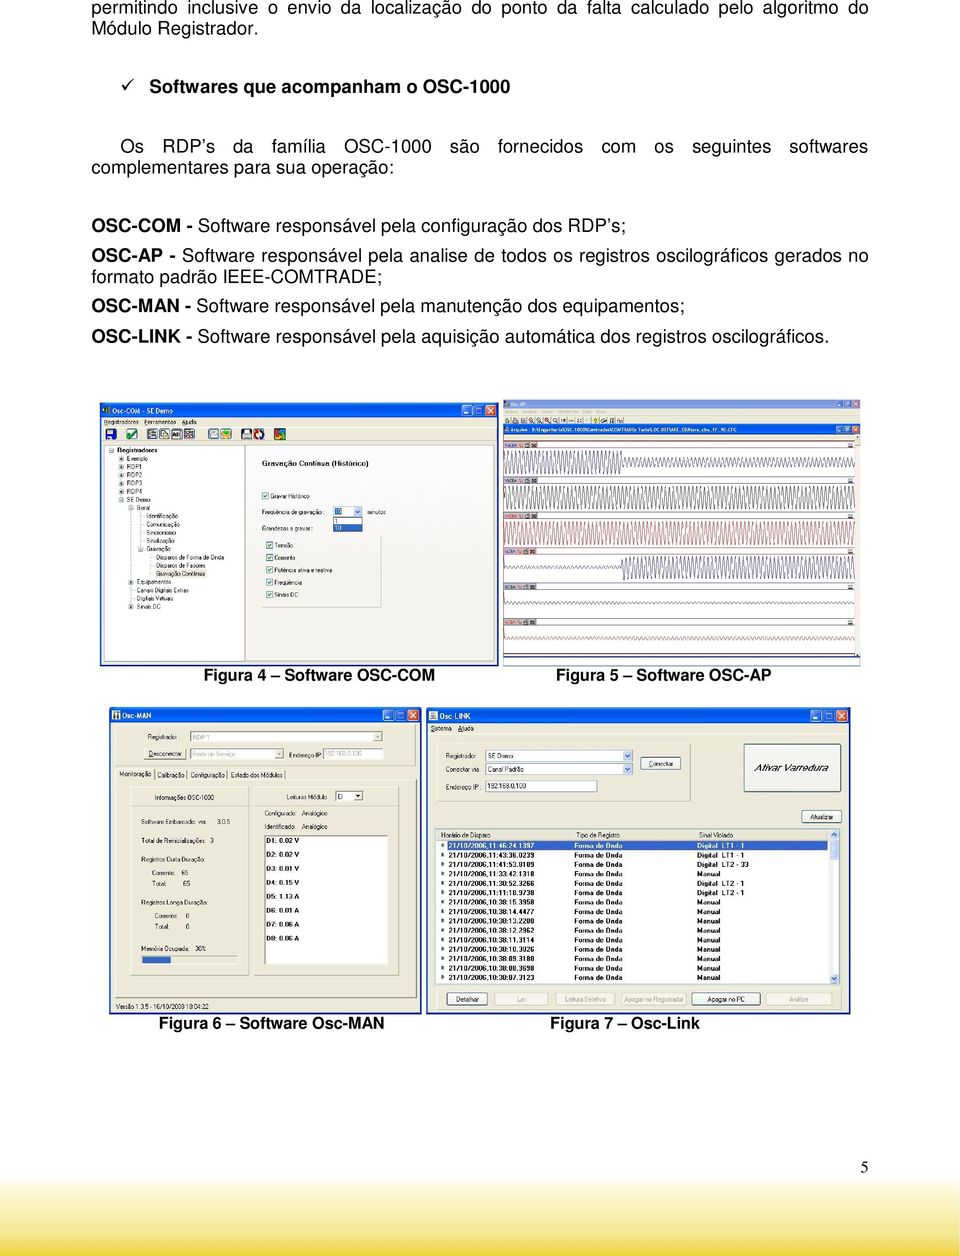 responsável pela configuração dos RDP s; OSC-AP - Software responsável pela analise de todos os registros oscilográficos gerados no formato padrão IEEE-COMTRADE; OSC-MAN